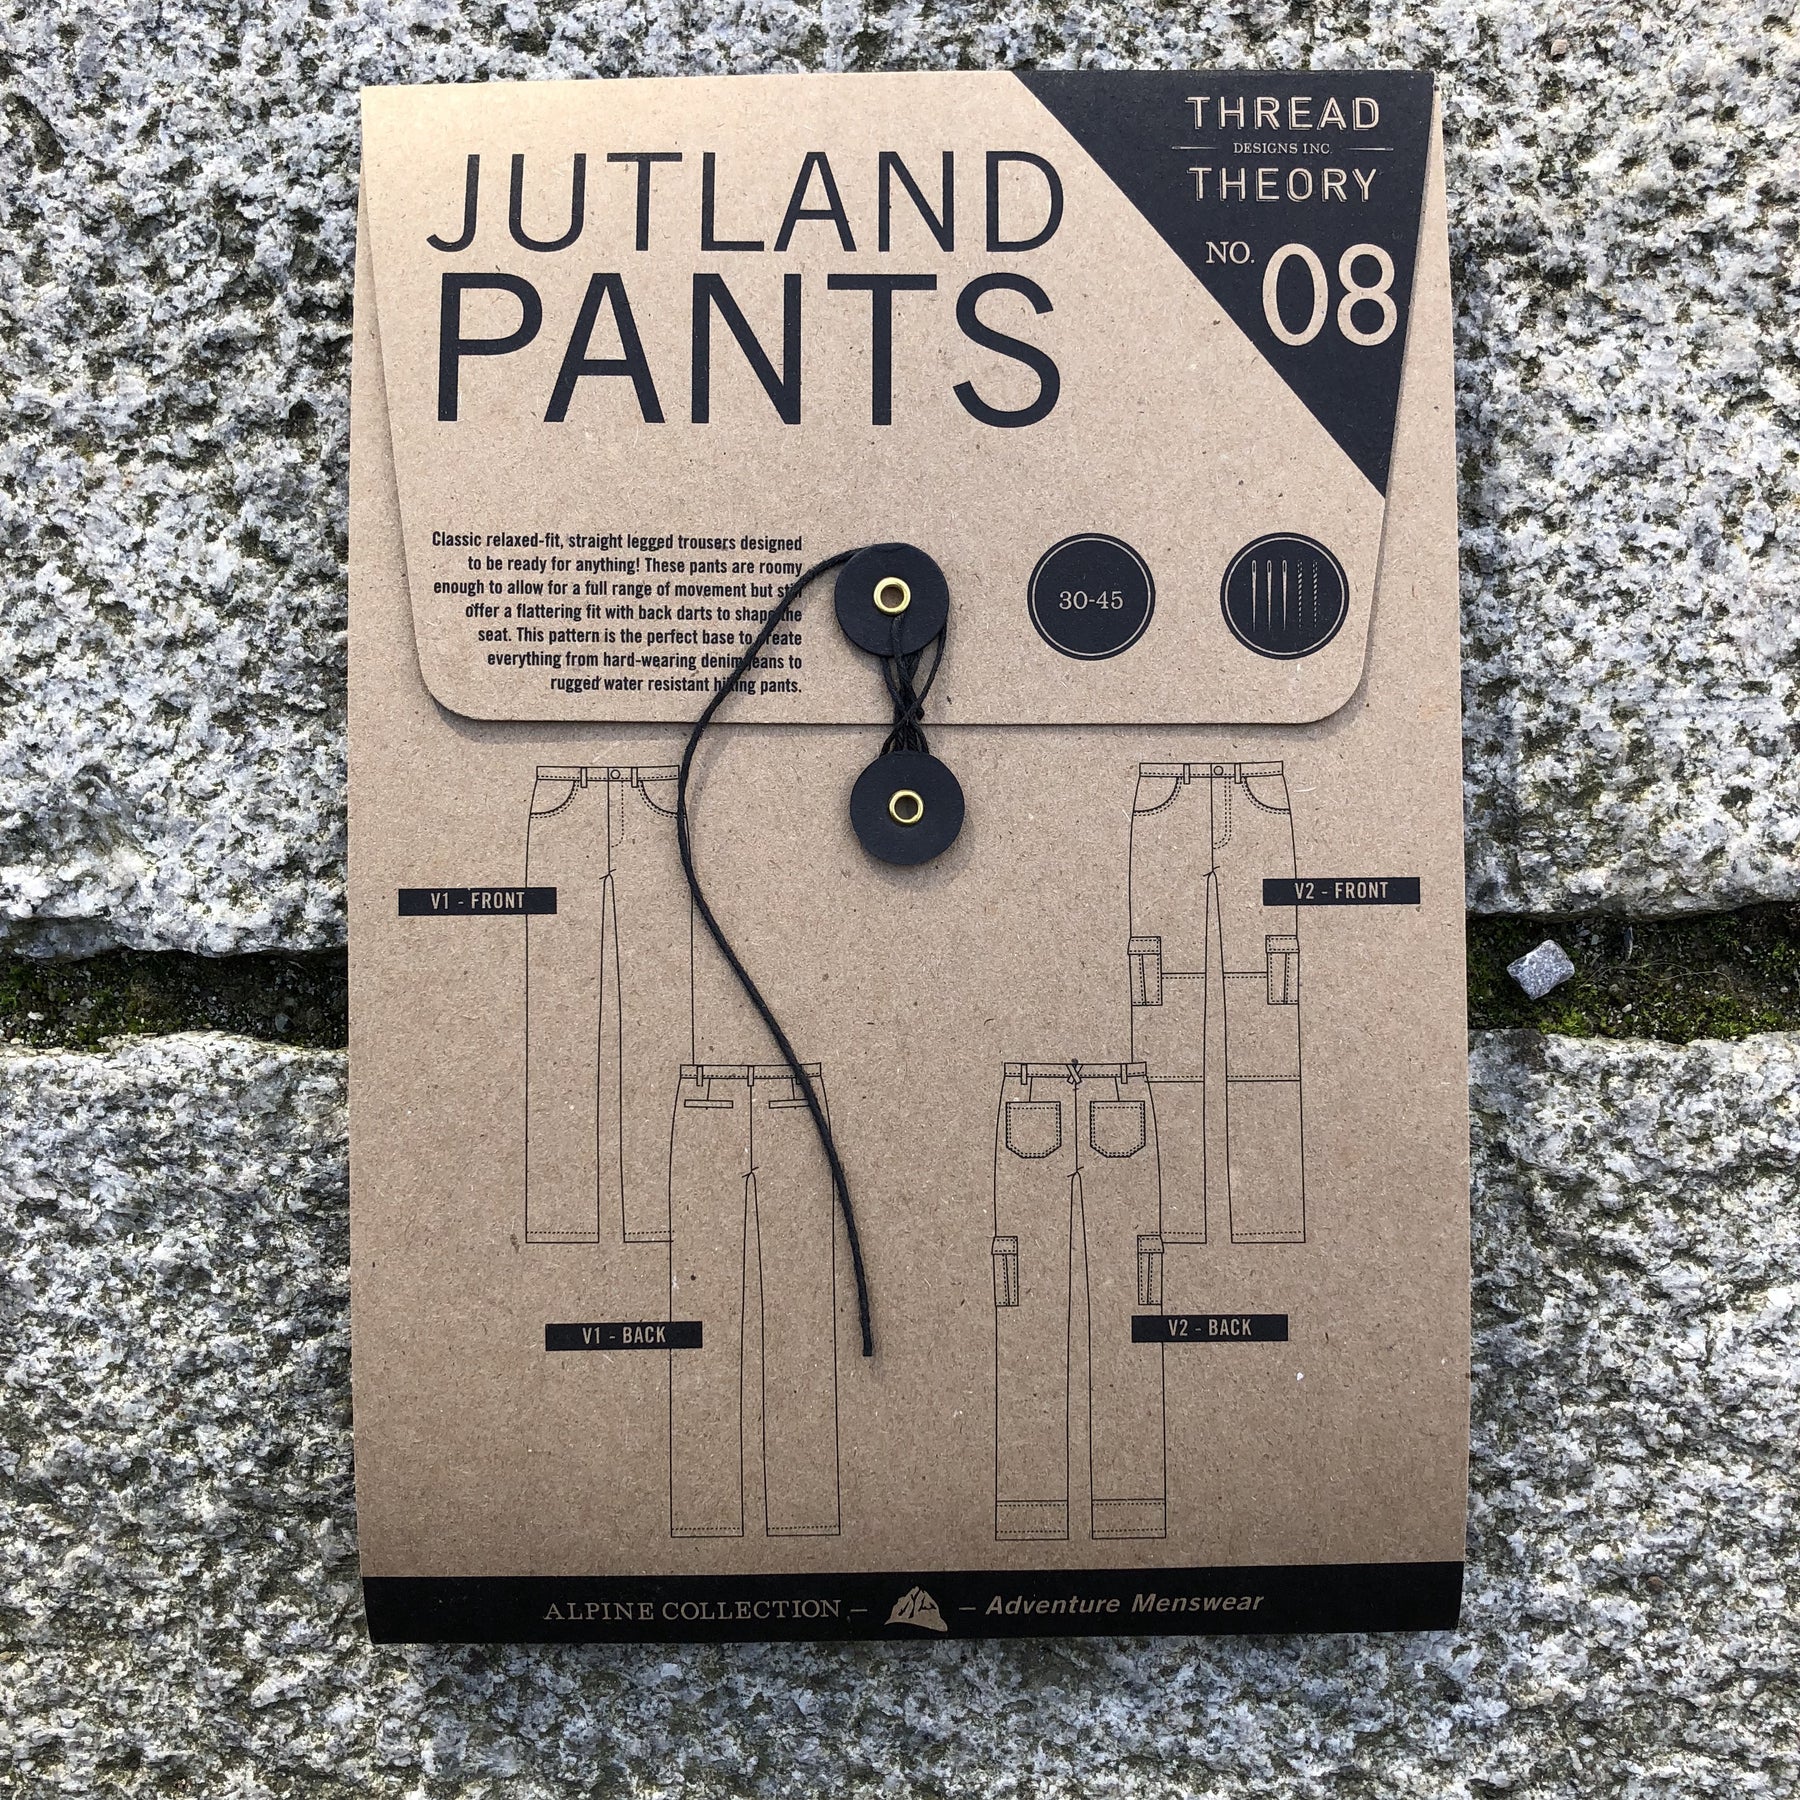 Jutland Pants Pattern by Thread Theory – Make At 140